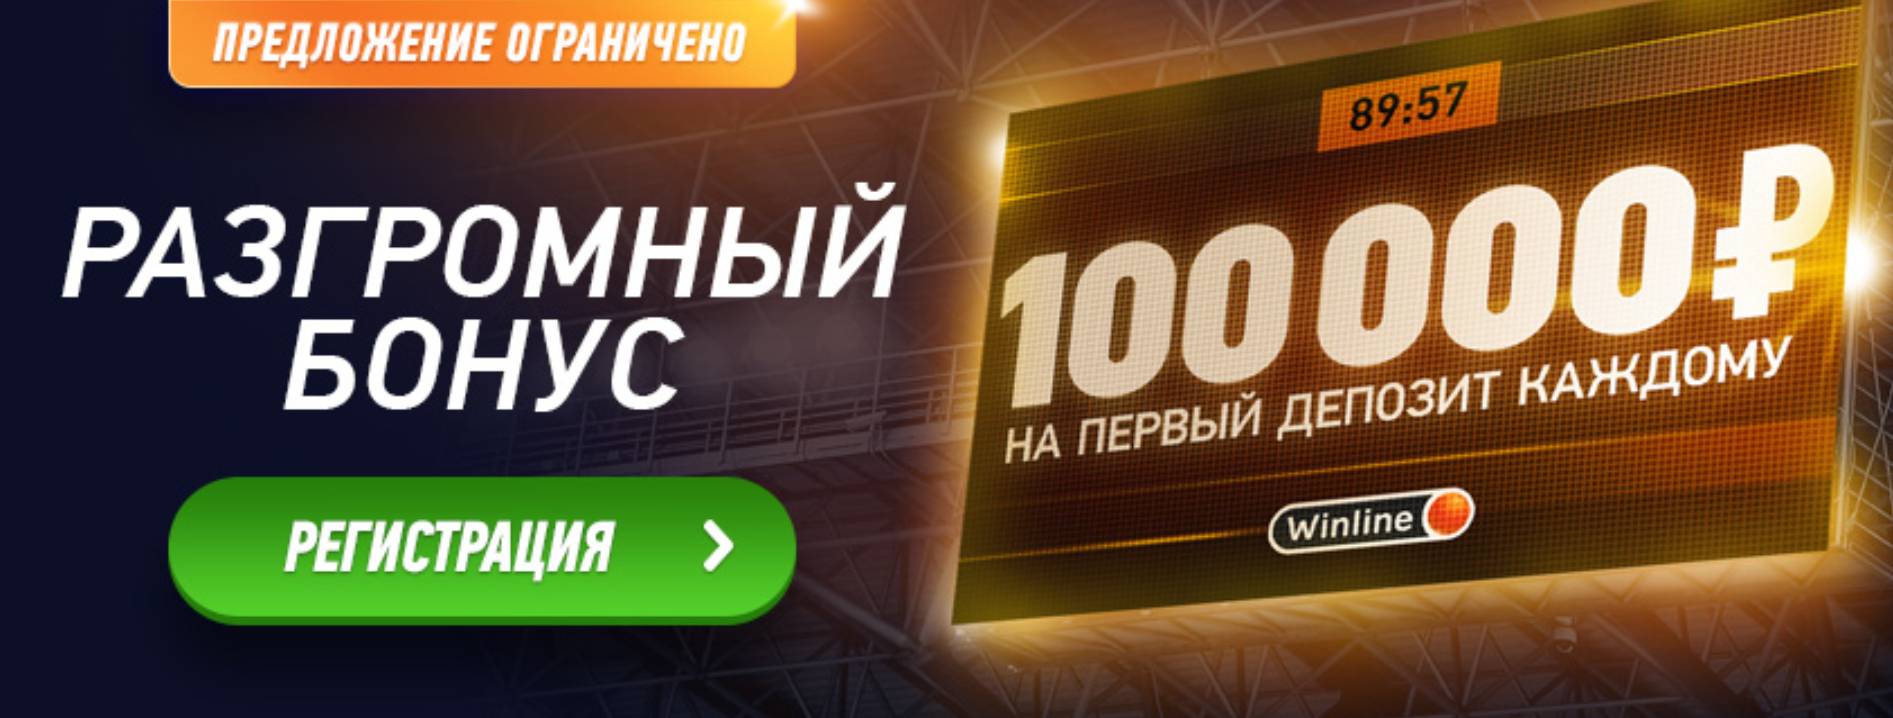 Winline дает разгромный бонус 100 000 рублей!